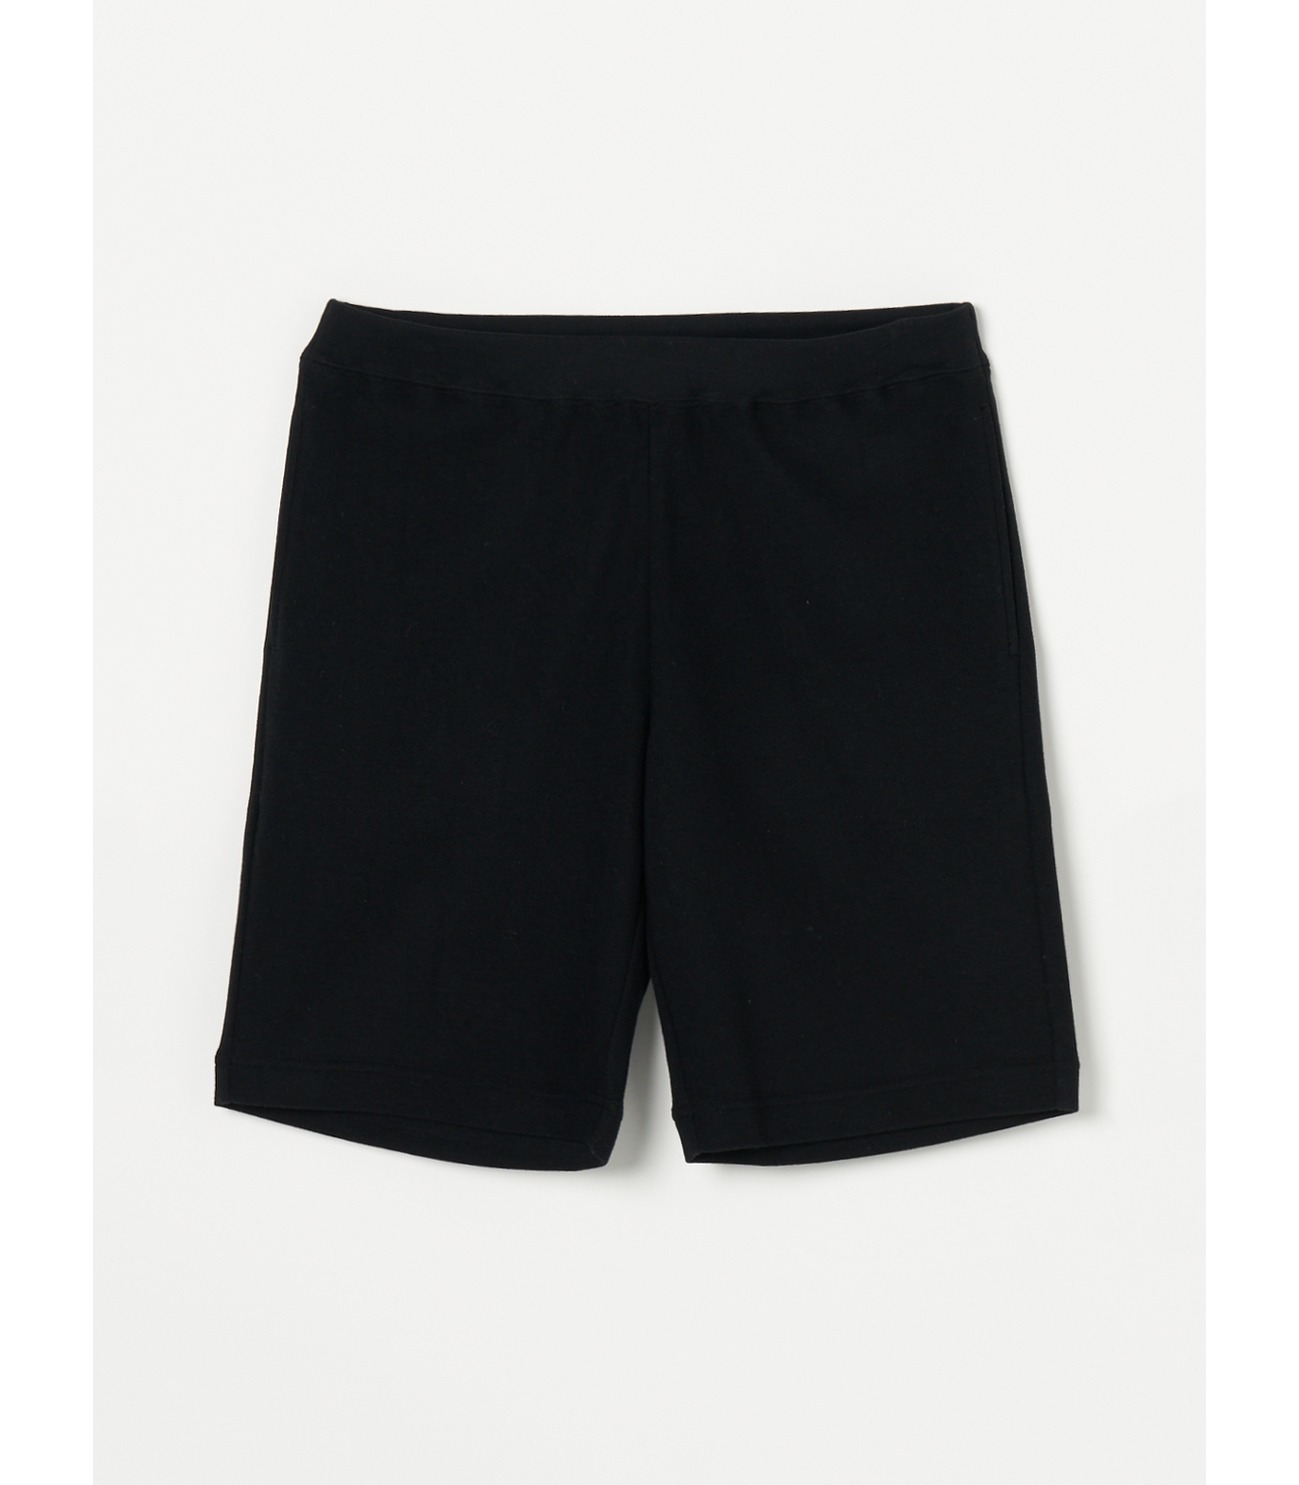 Men's compact pile shorts 詳細画像 black 1